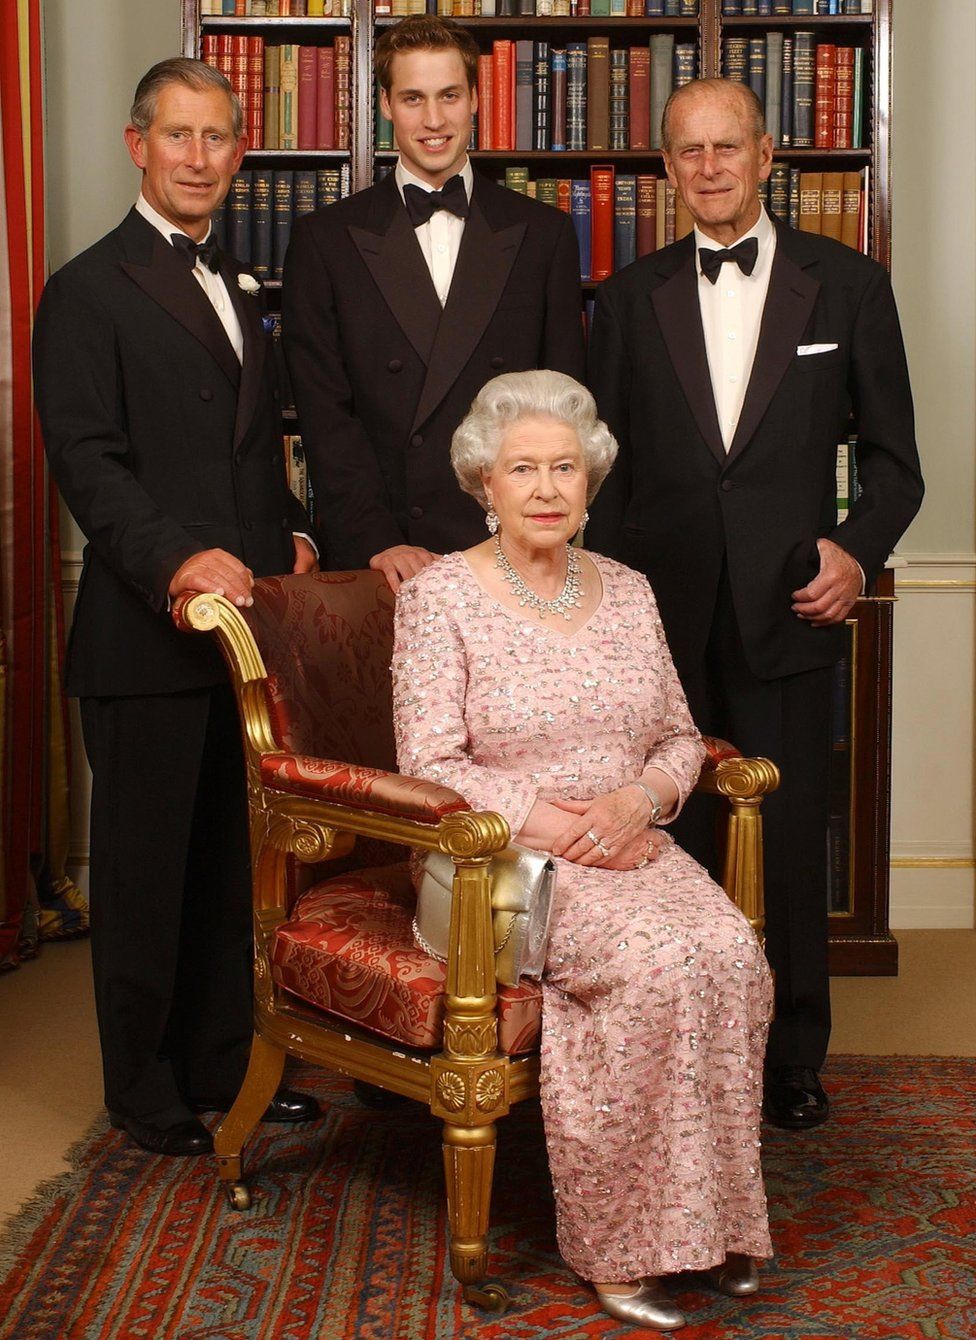 Три поколения британской королевской семьи: королева Елизавета II и ее муж, герцог Эдинбургский, их старший сын, принц Чарльз, и старший внук принц Уильям